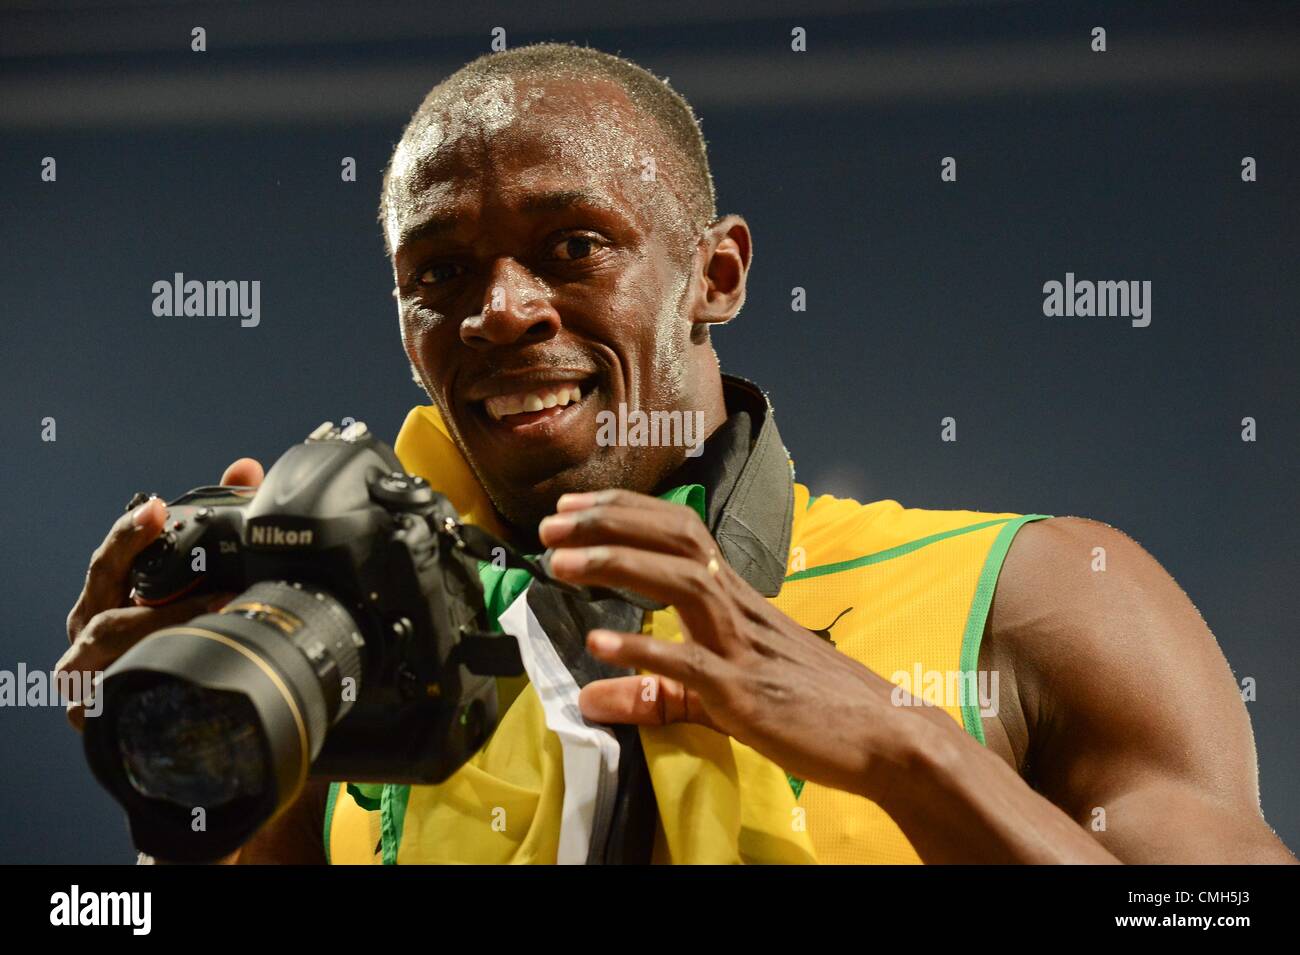 Londres, ANGLETERRE - 9 août, Usain Bolt avec le nouveau Nikon D4 au cours de la séance nocturne de l'athlétisme au Stade olympique le 9 août 2012 à Londres, Angleterre Photo de Roger Sedres / Images Gallo Banque D'Images